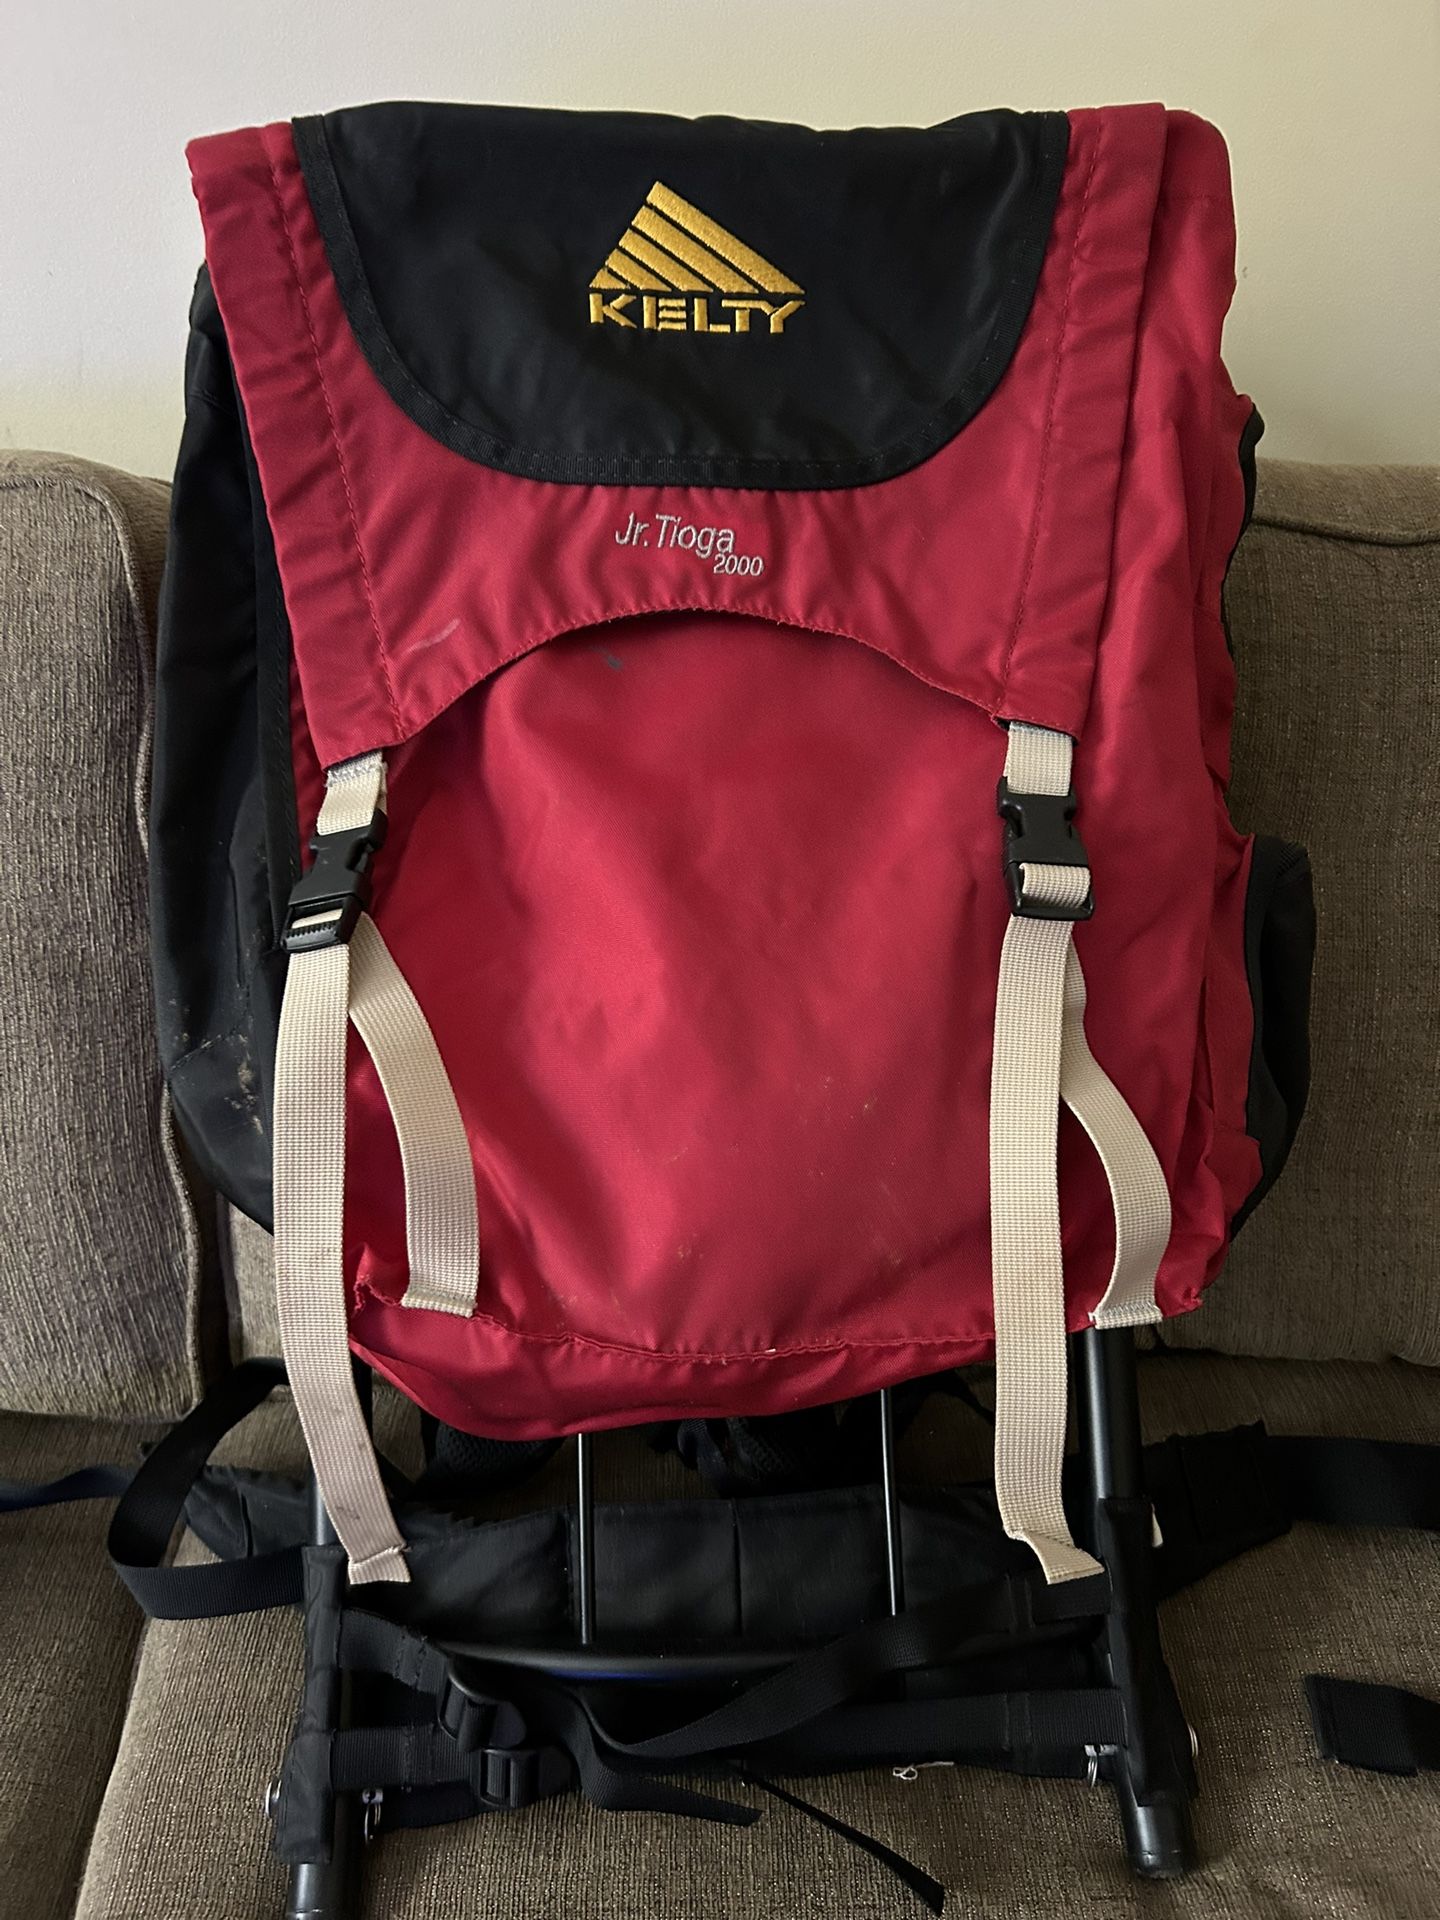 Kelty Jr. Tioga 2000 Backpack